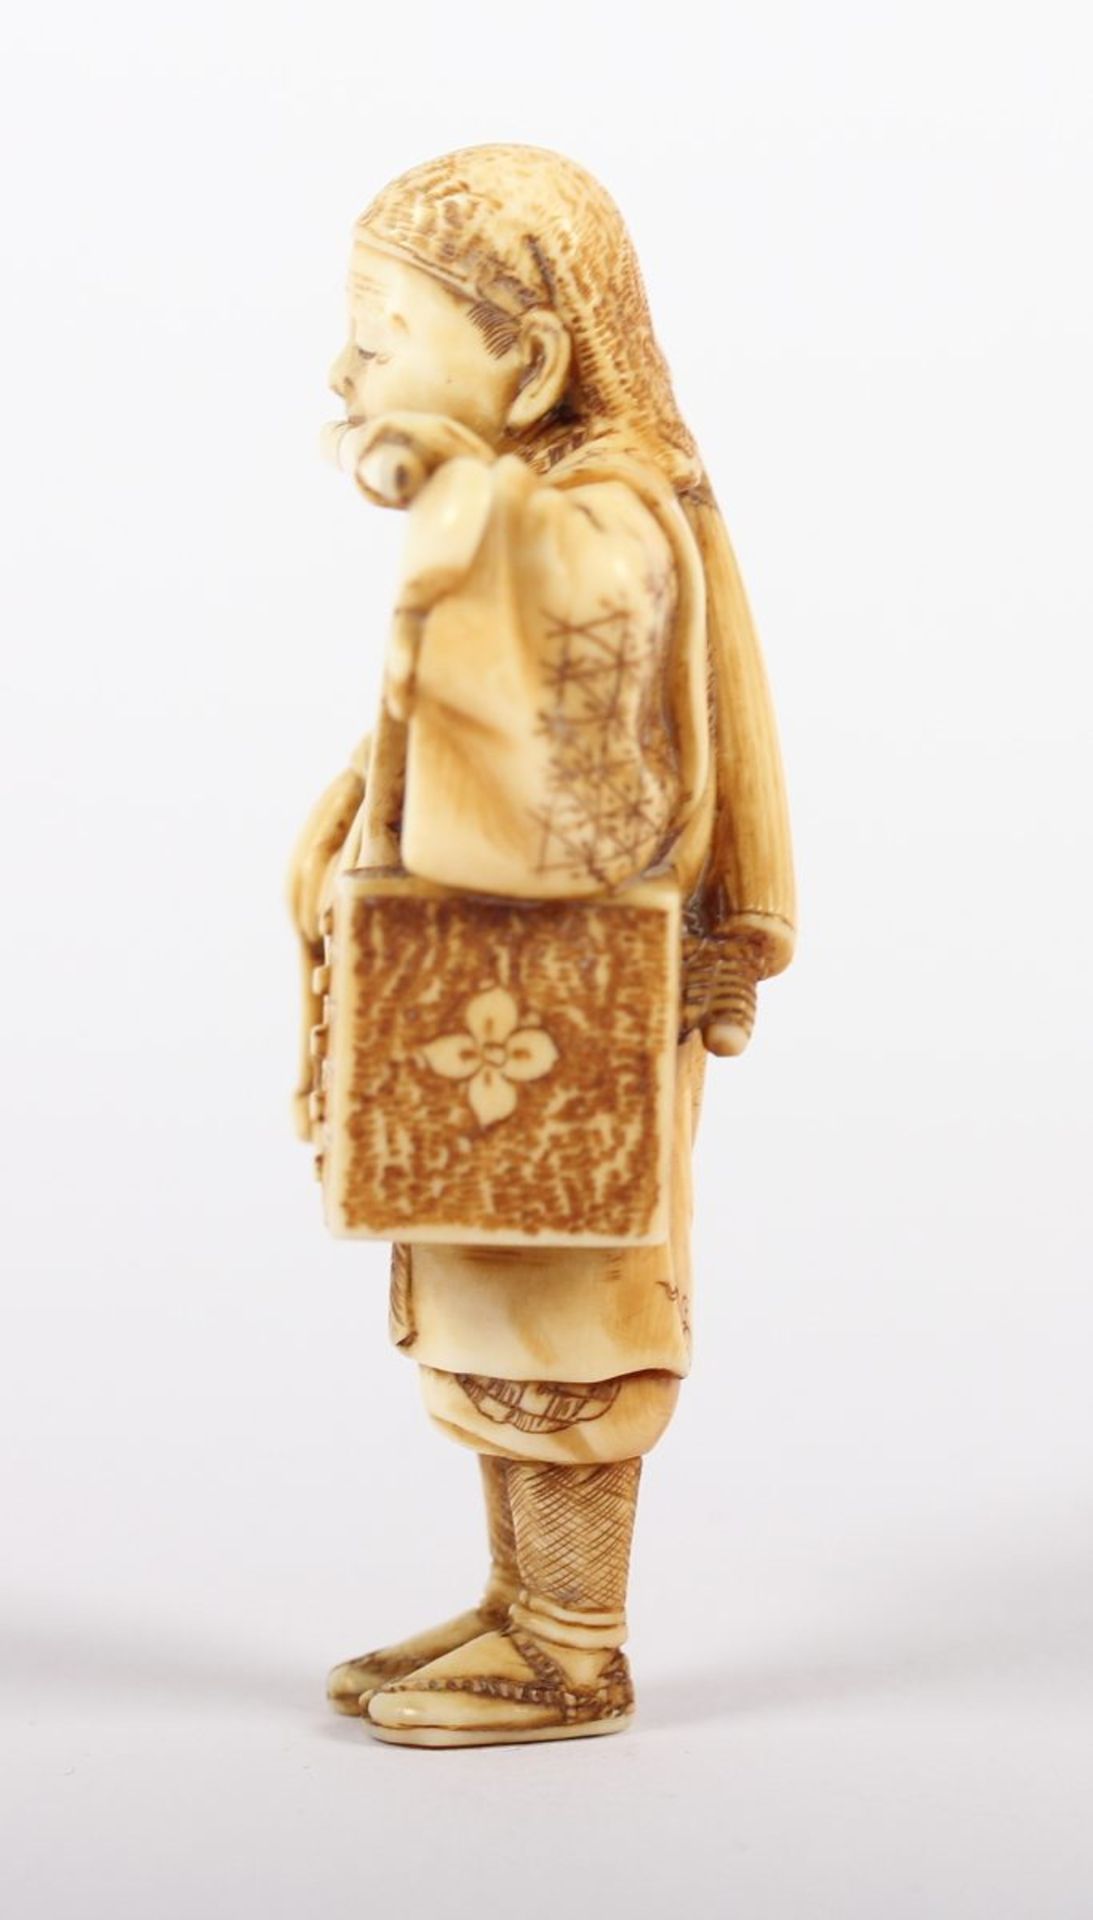 NETSUKE MUSIKER, Elfenbein, in einem kurzen Mantel gekleidet, mit der Linken hält er eine Flöte - Bild 3 aus 5